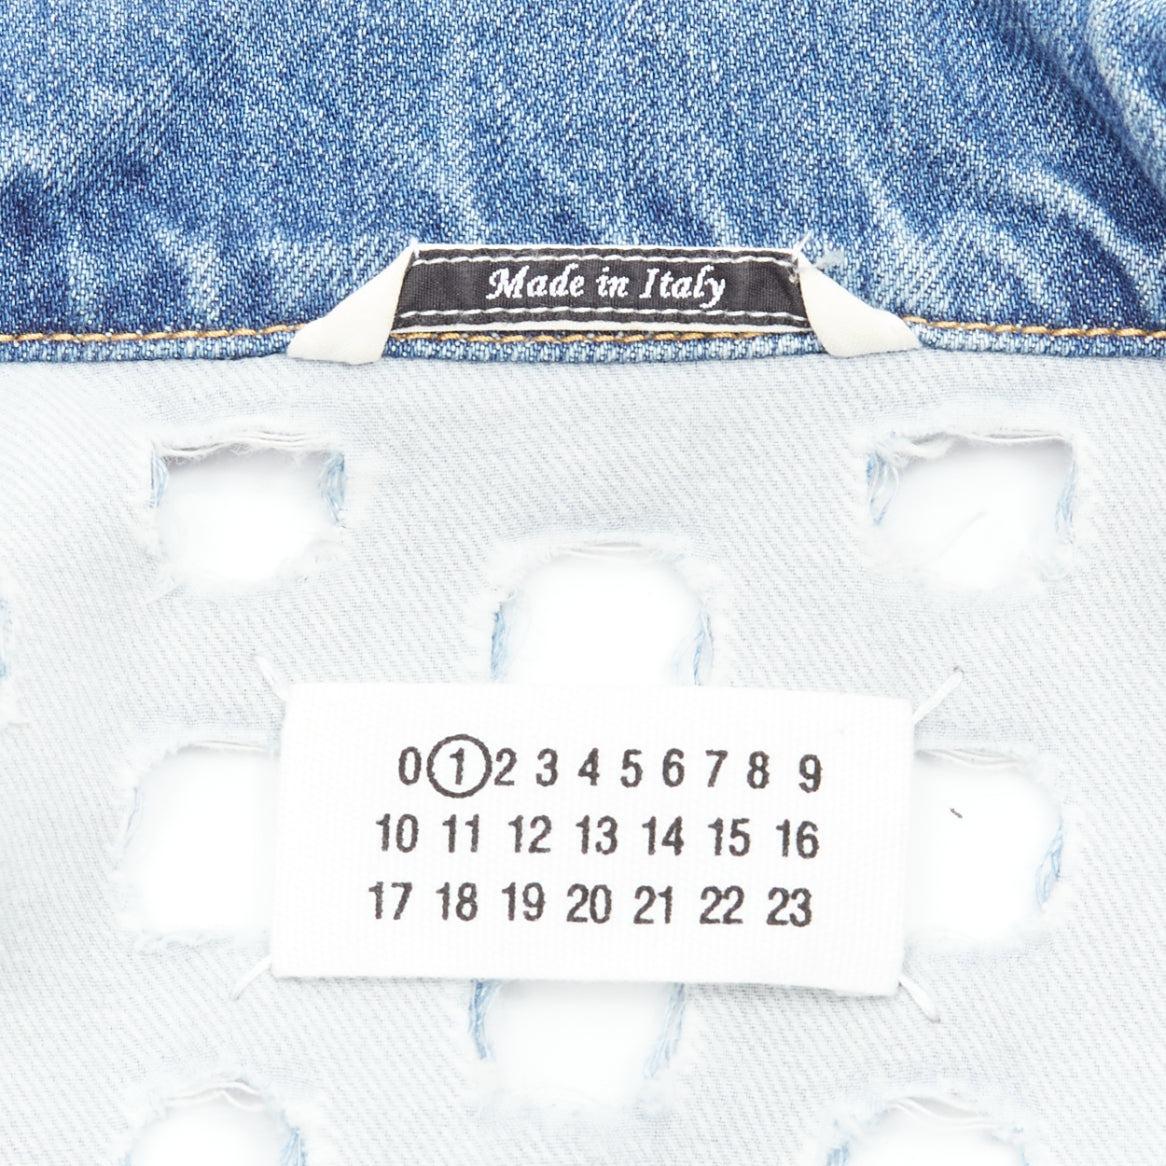 MAISON MARGIELA John Galliano - Veste en jean vieillie avec œillets bleus, poinçonnée en vente 5